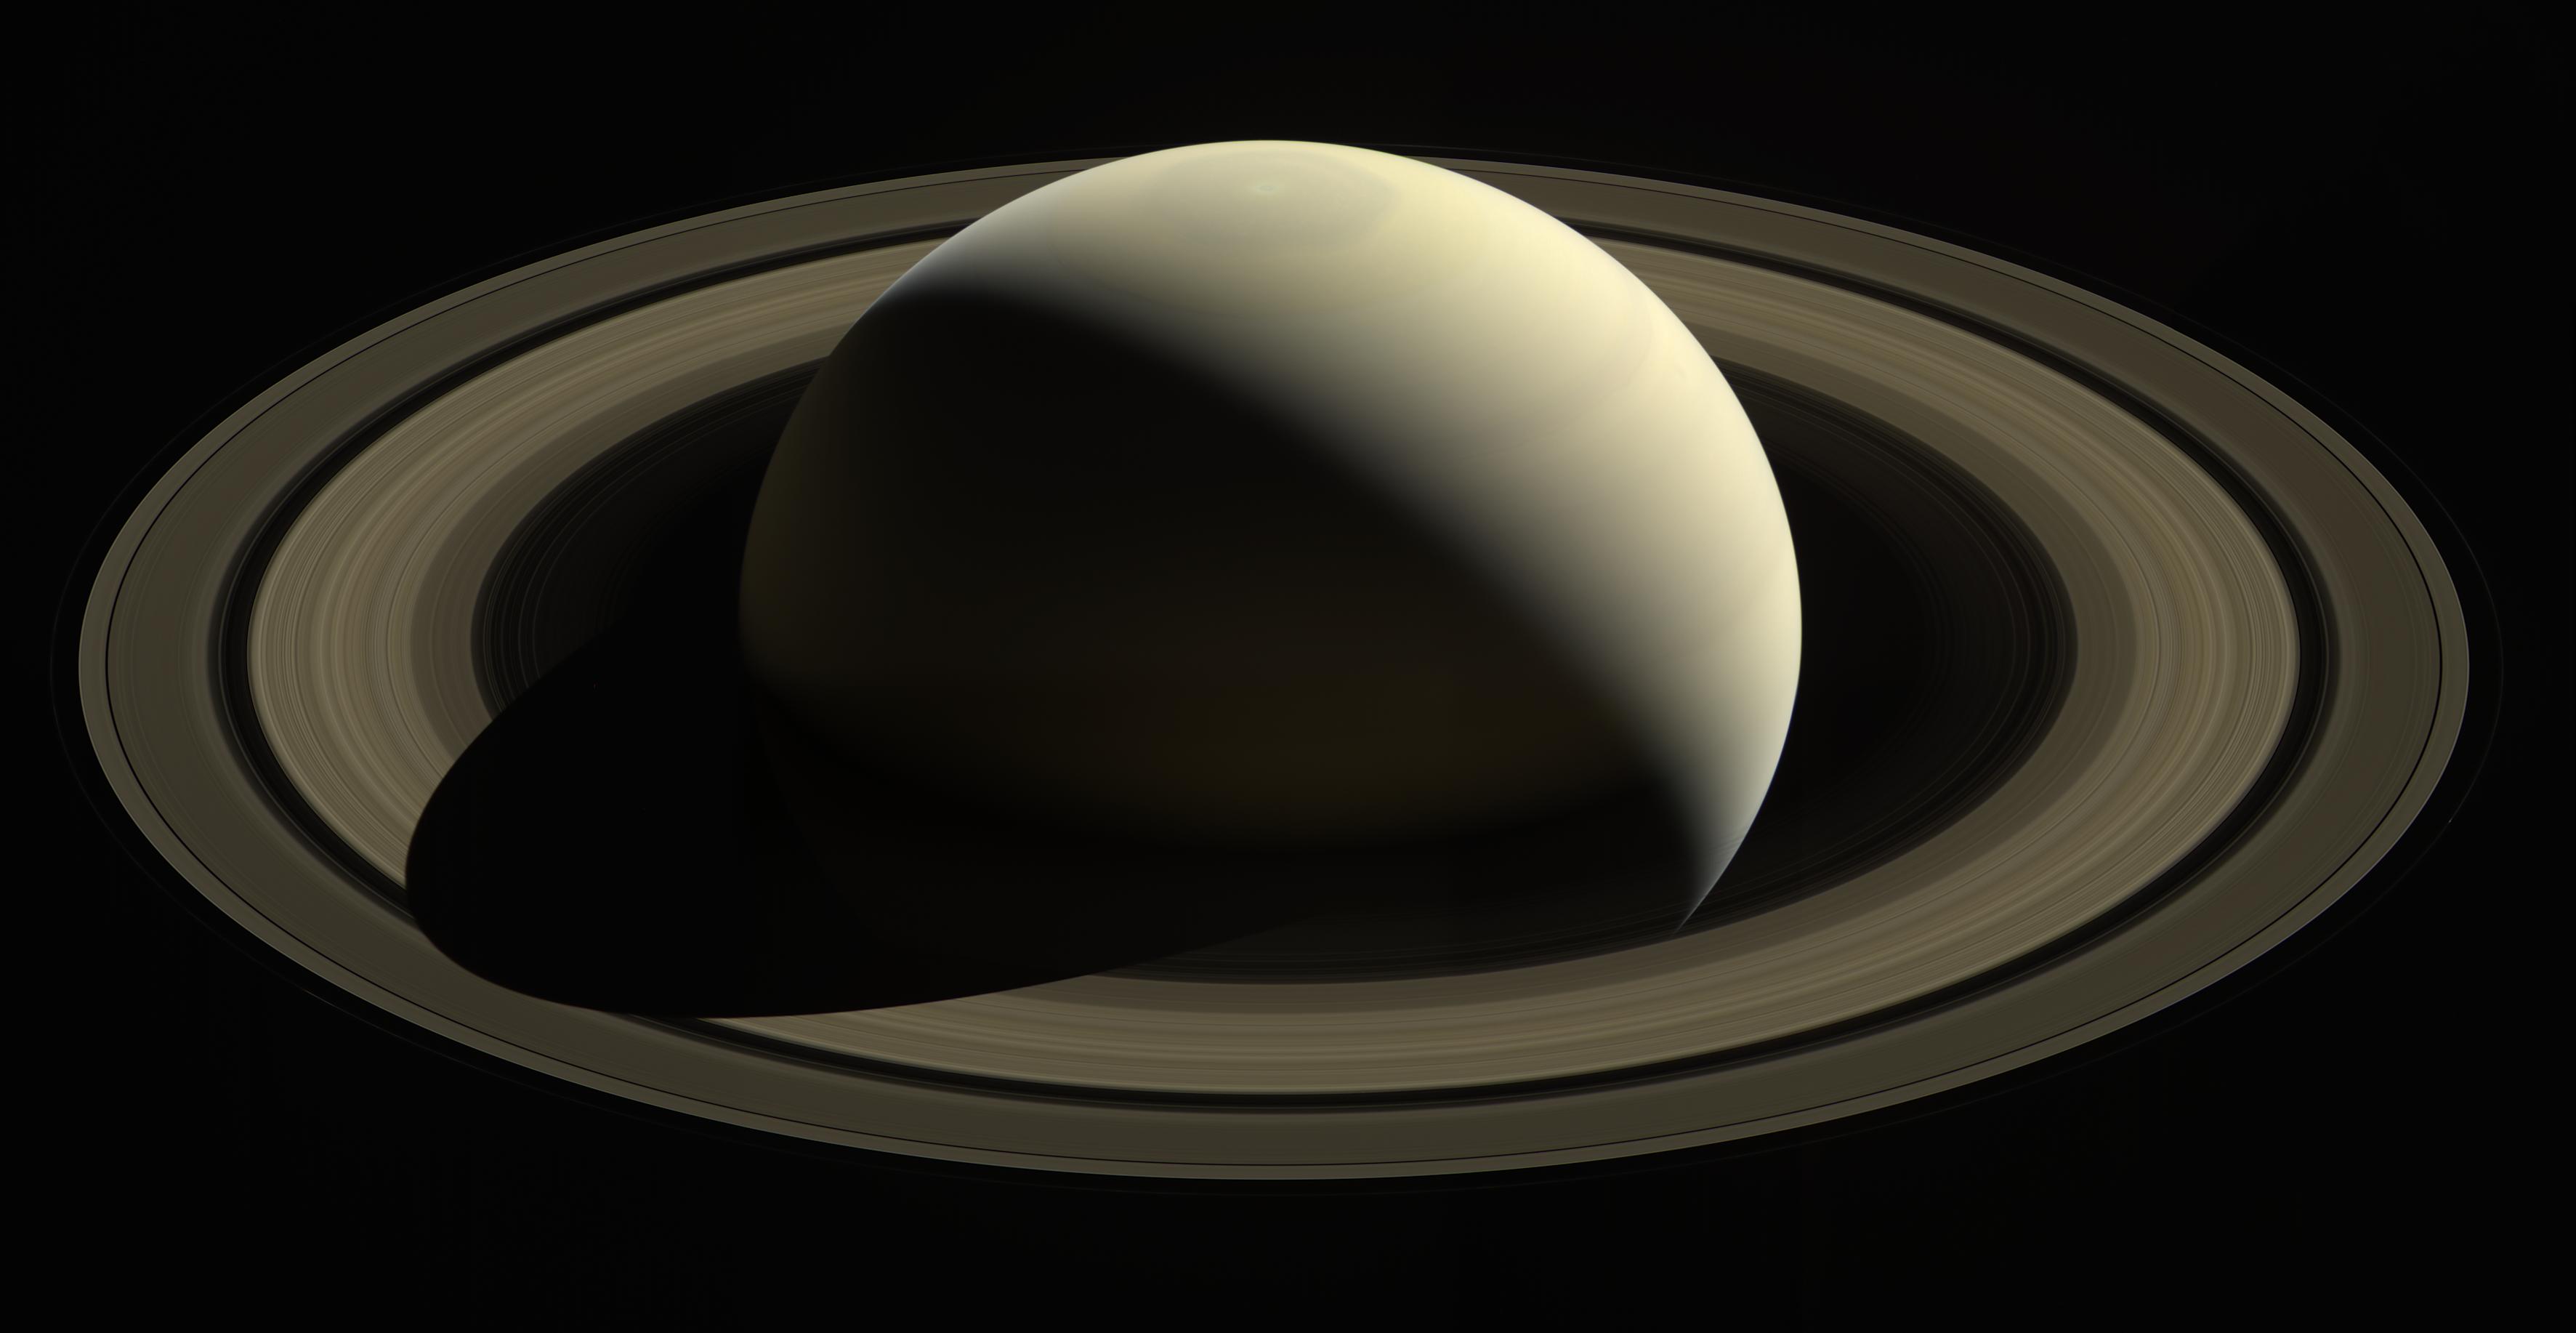 一艘宇宙飞船俯瞰着一颗柔软的金色土星，土星周围环绕着光环。